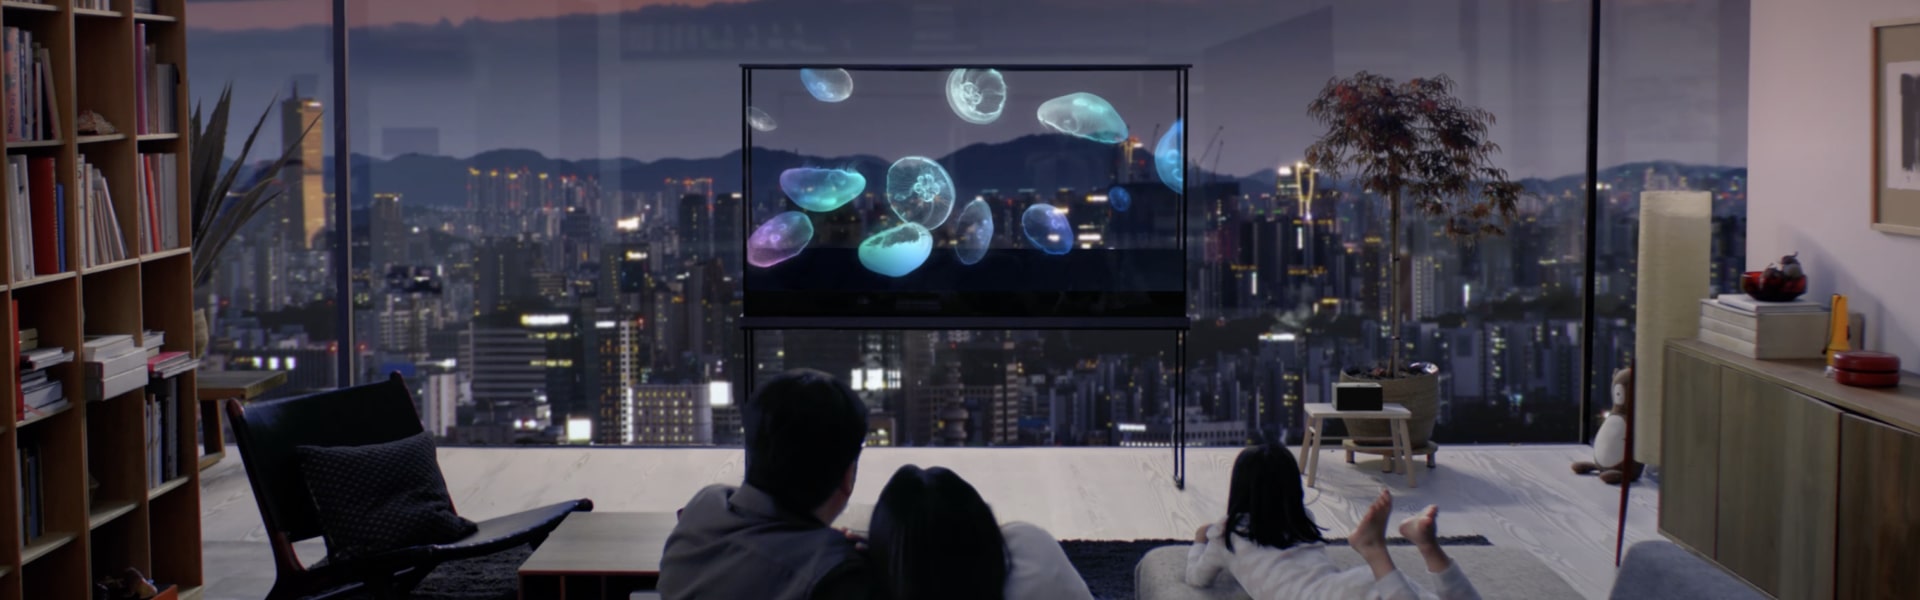 Egy család élvezi az LG Oled T tévét, amely képernyőjén medúza úszik, miközben a háttérben lévő város képe átlátszik az átlátszó képernyőn.